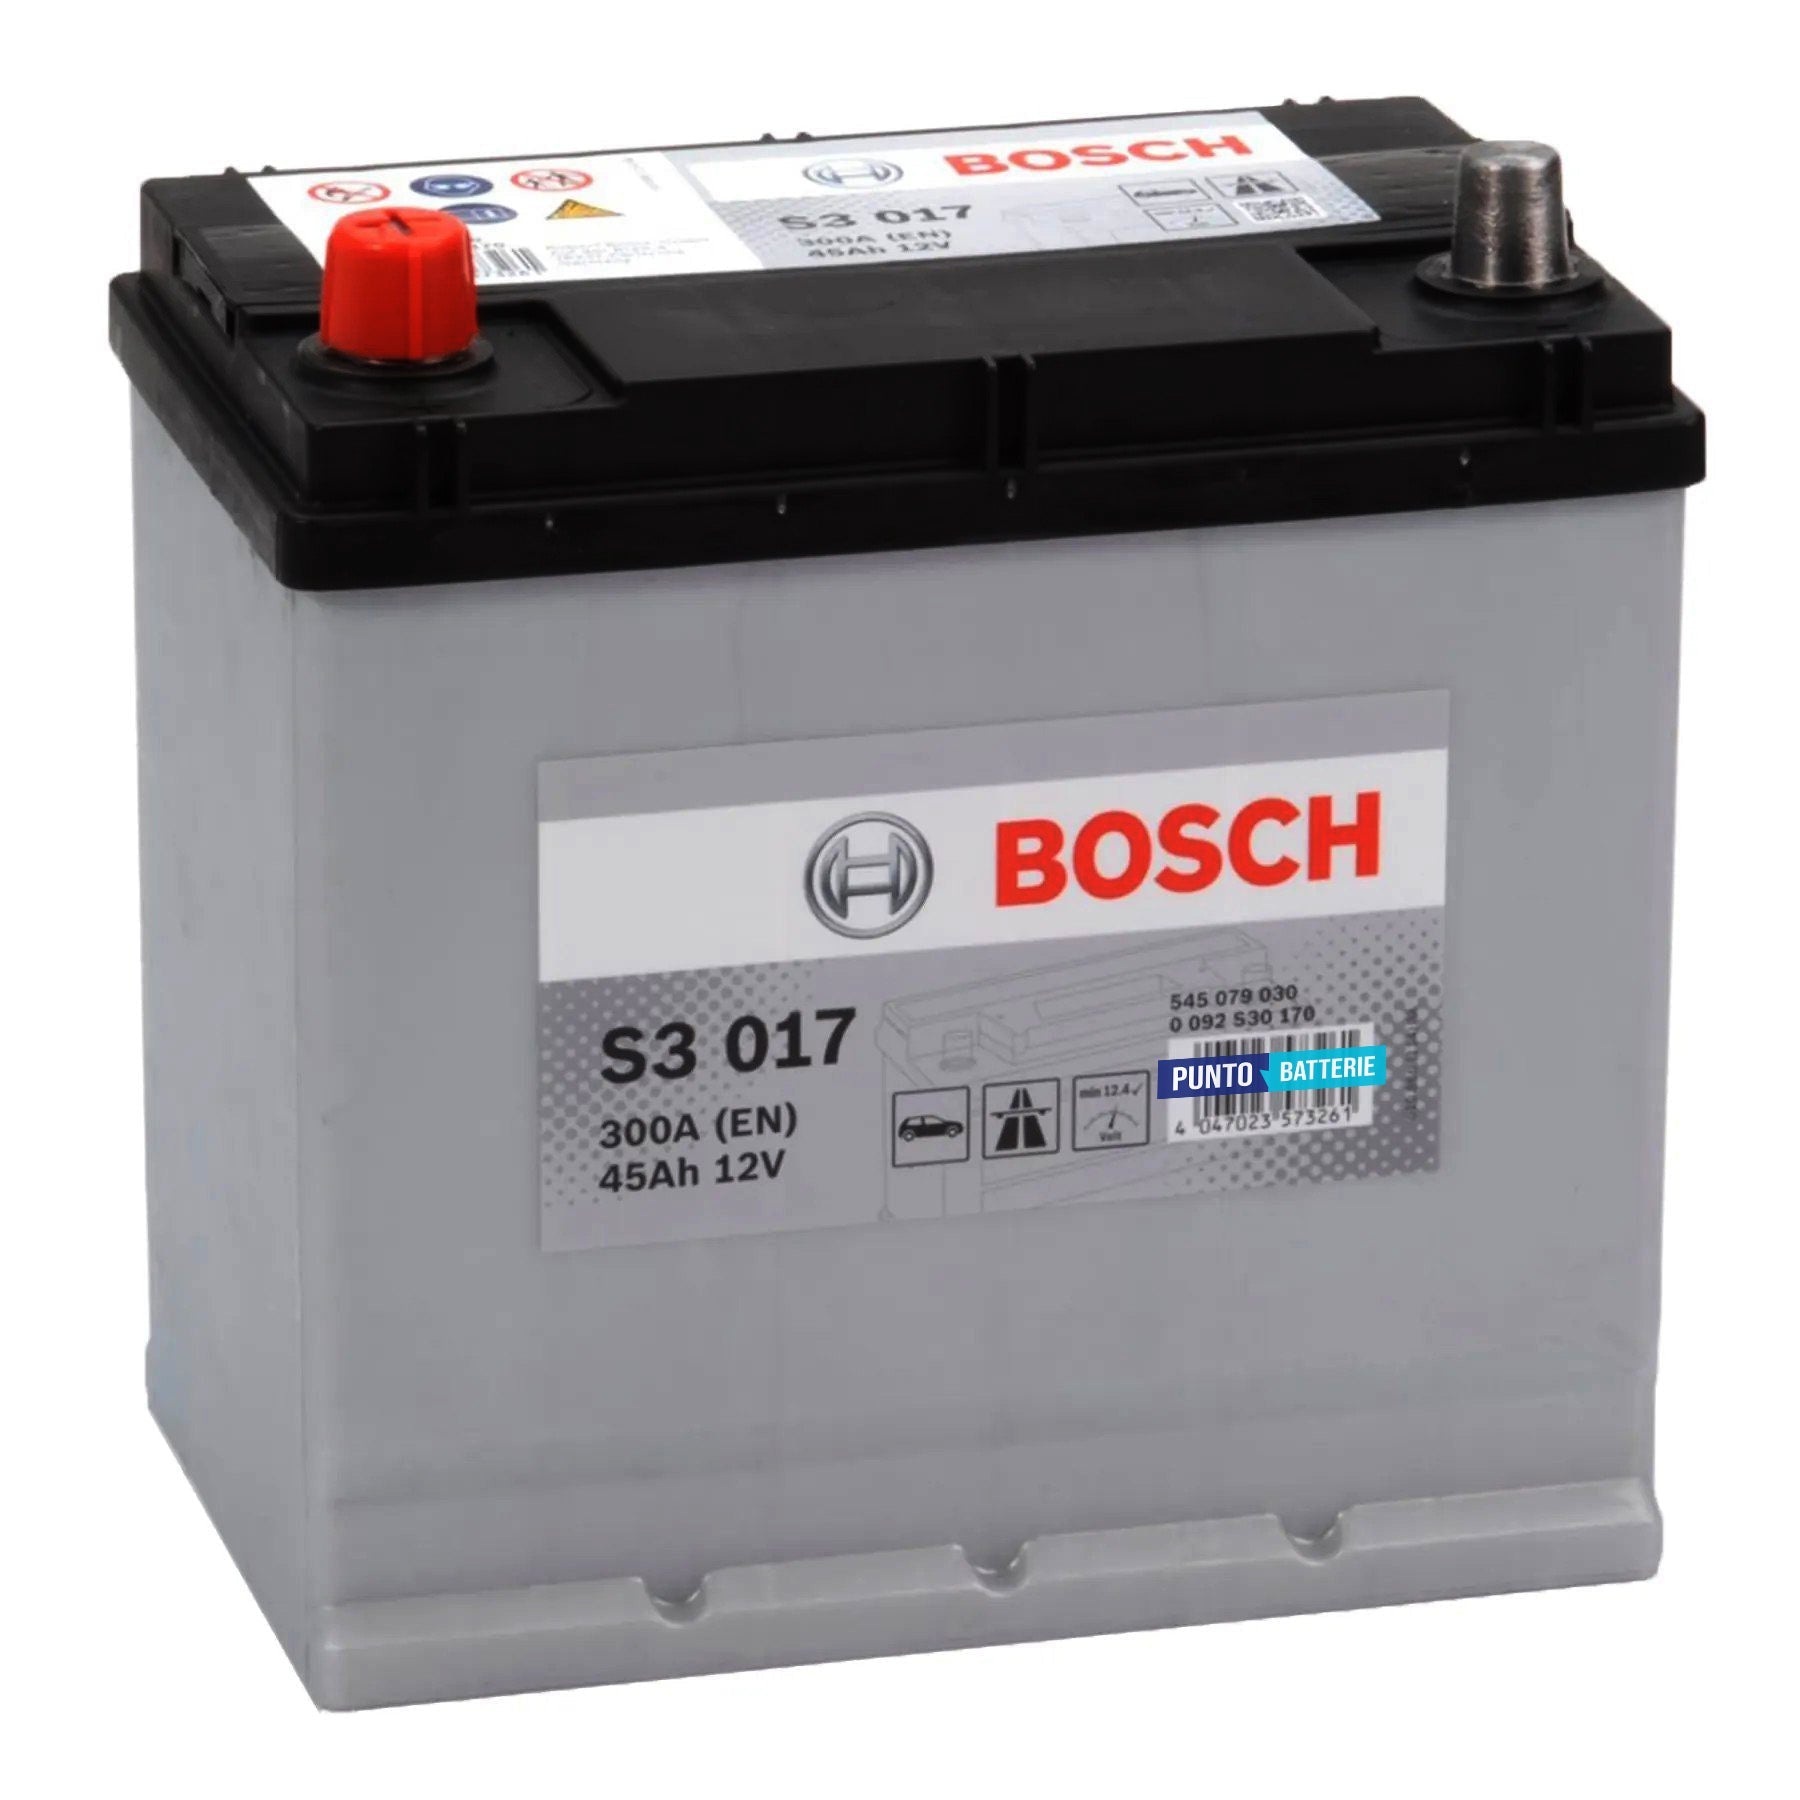 Batteria originale Bosch S3 S3 017, dimensioni 220 x 135 x 225, polo positivo a sinistra, 12 volt, 45 amperora, 300 ampere. Batteria per auto e veicoli leggeri.